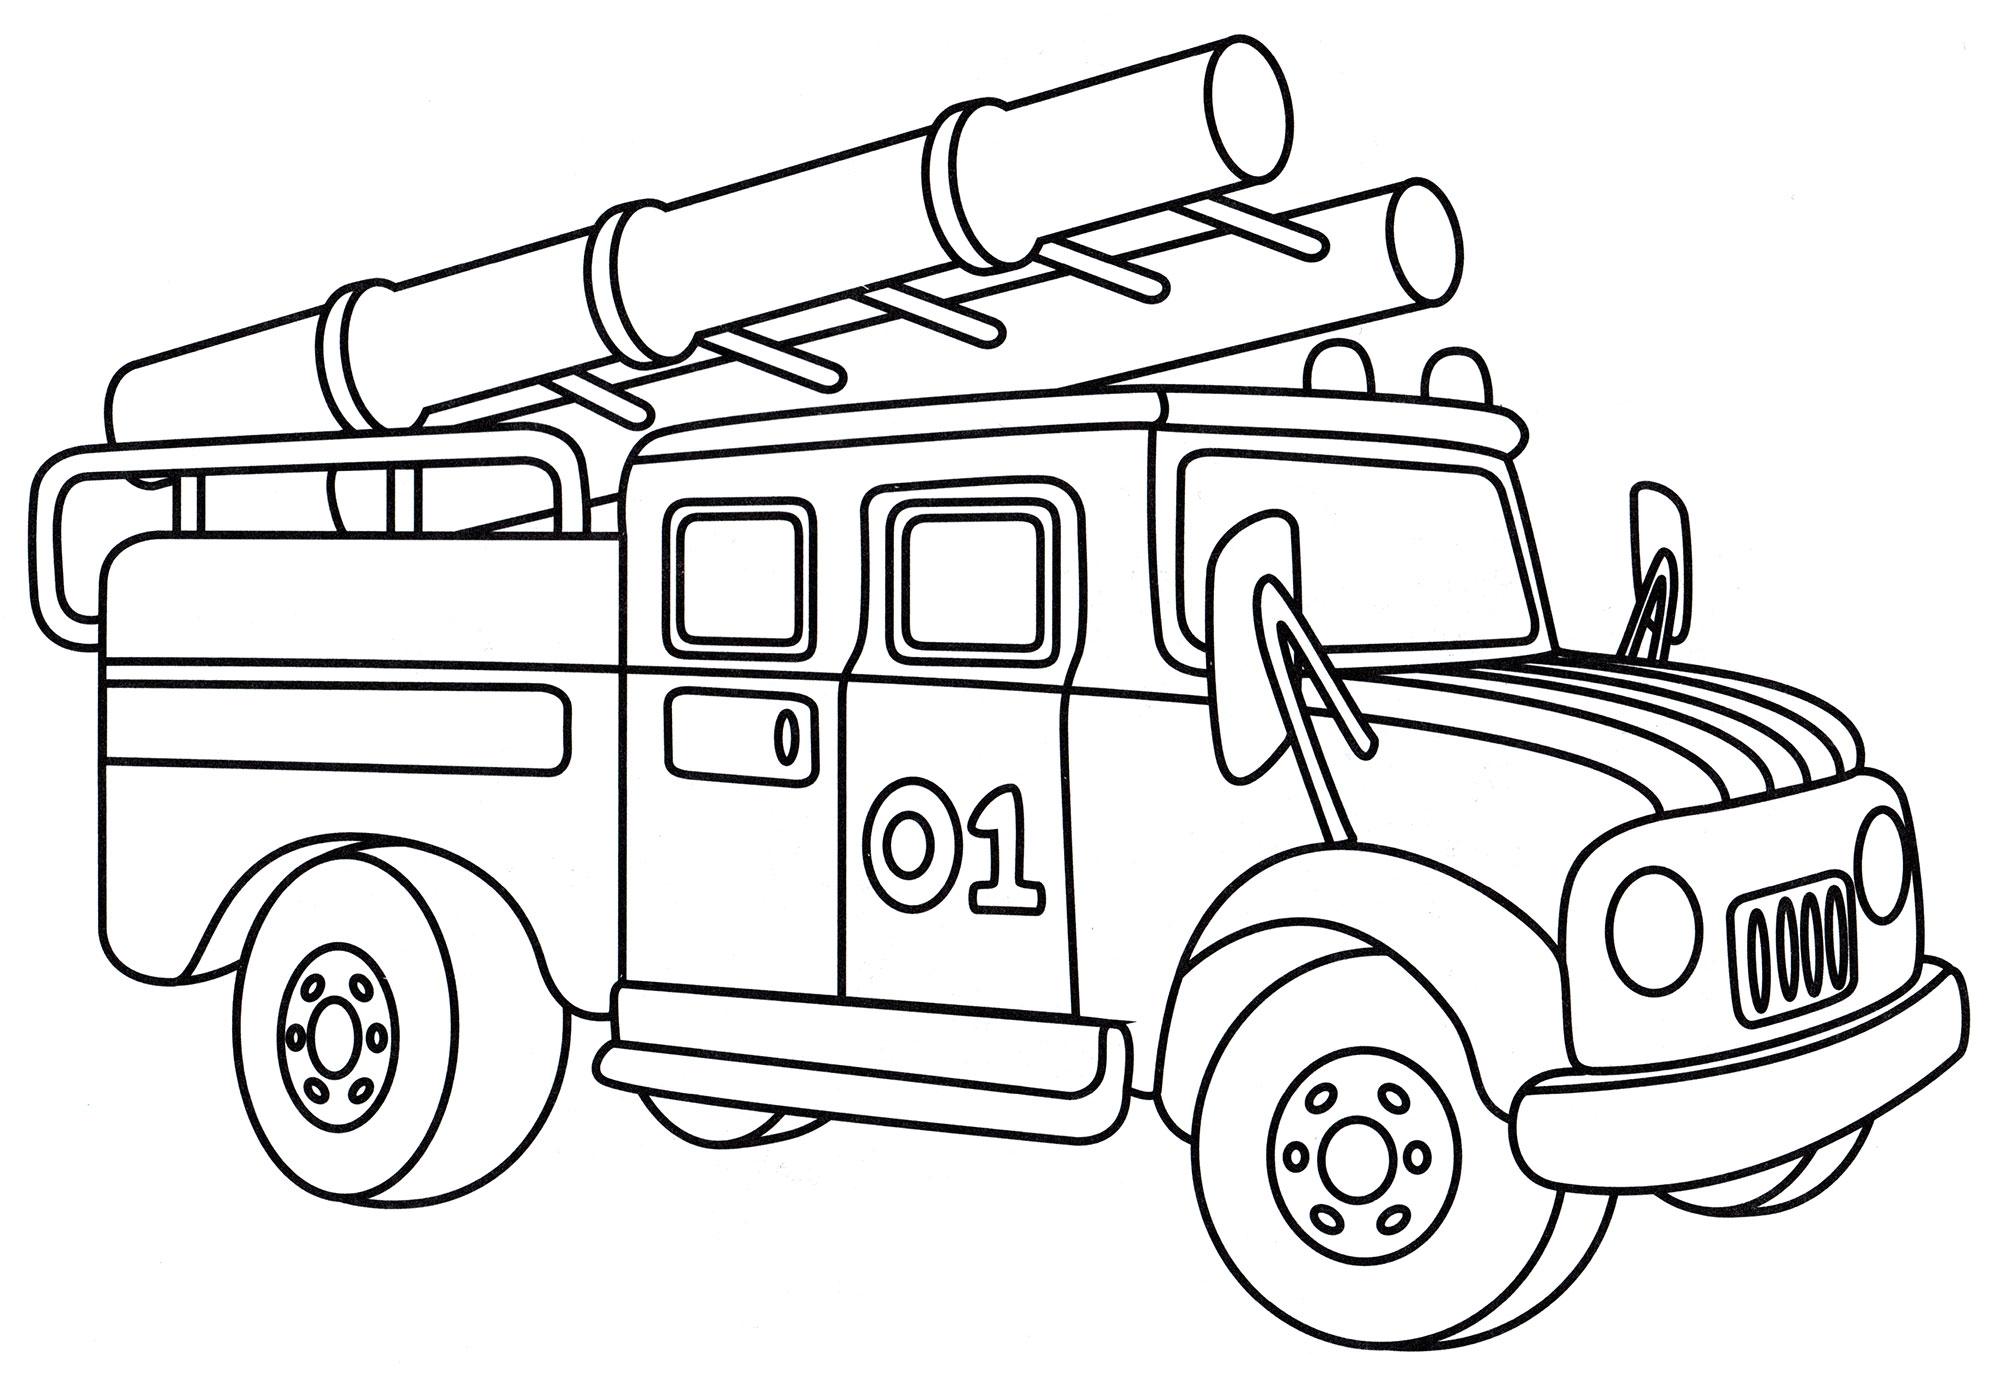 Раскраска Пожарник | Раскраски для детей печать онлайн